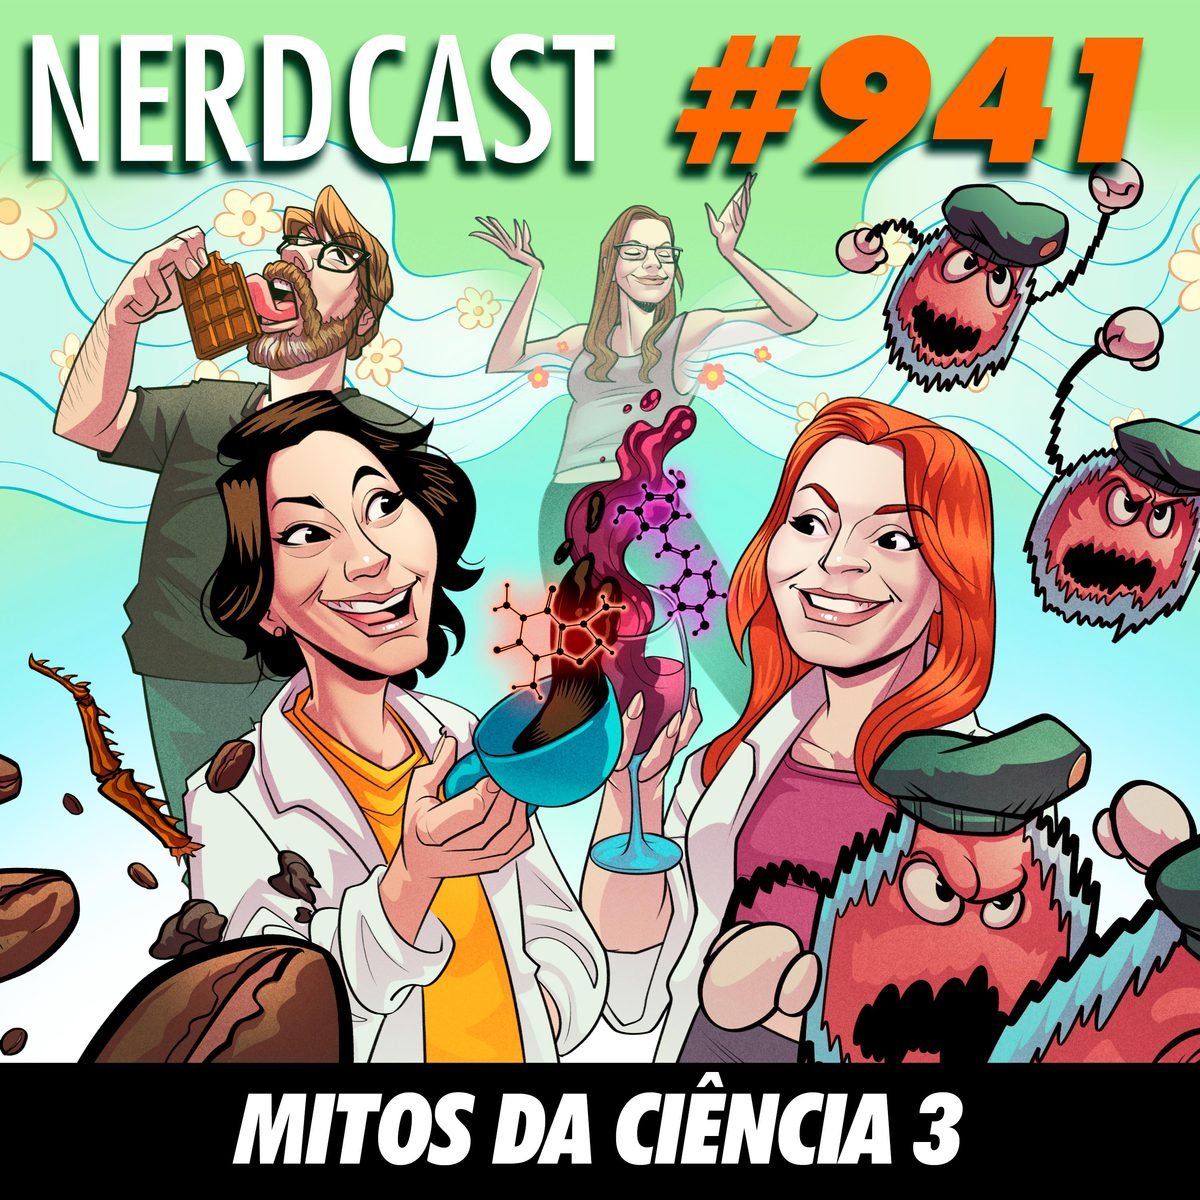 NerdCast 941 - Mitos da Ciência 3